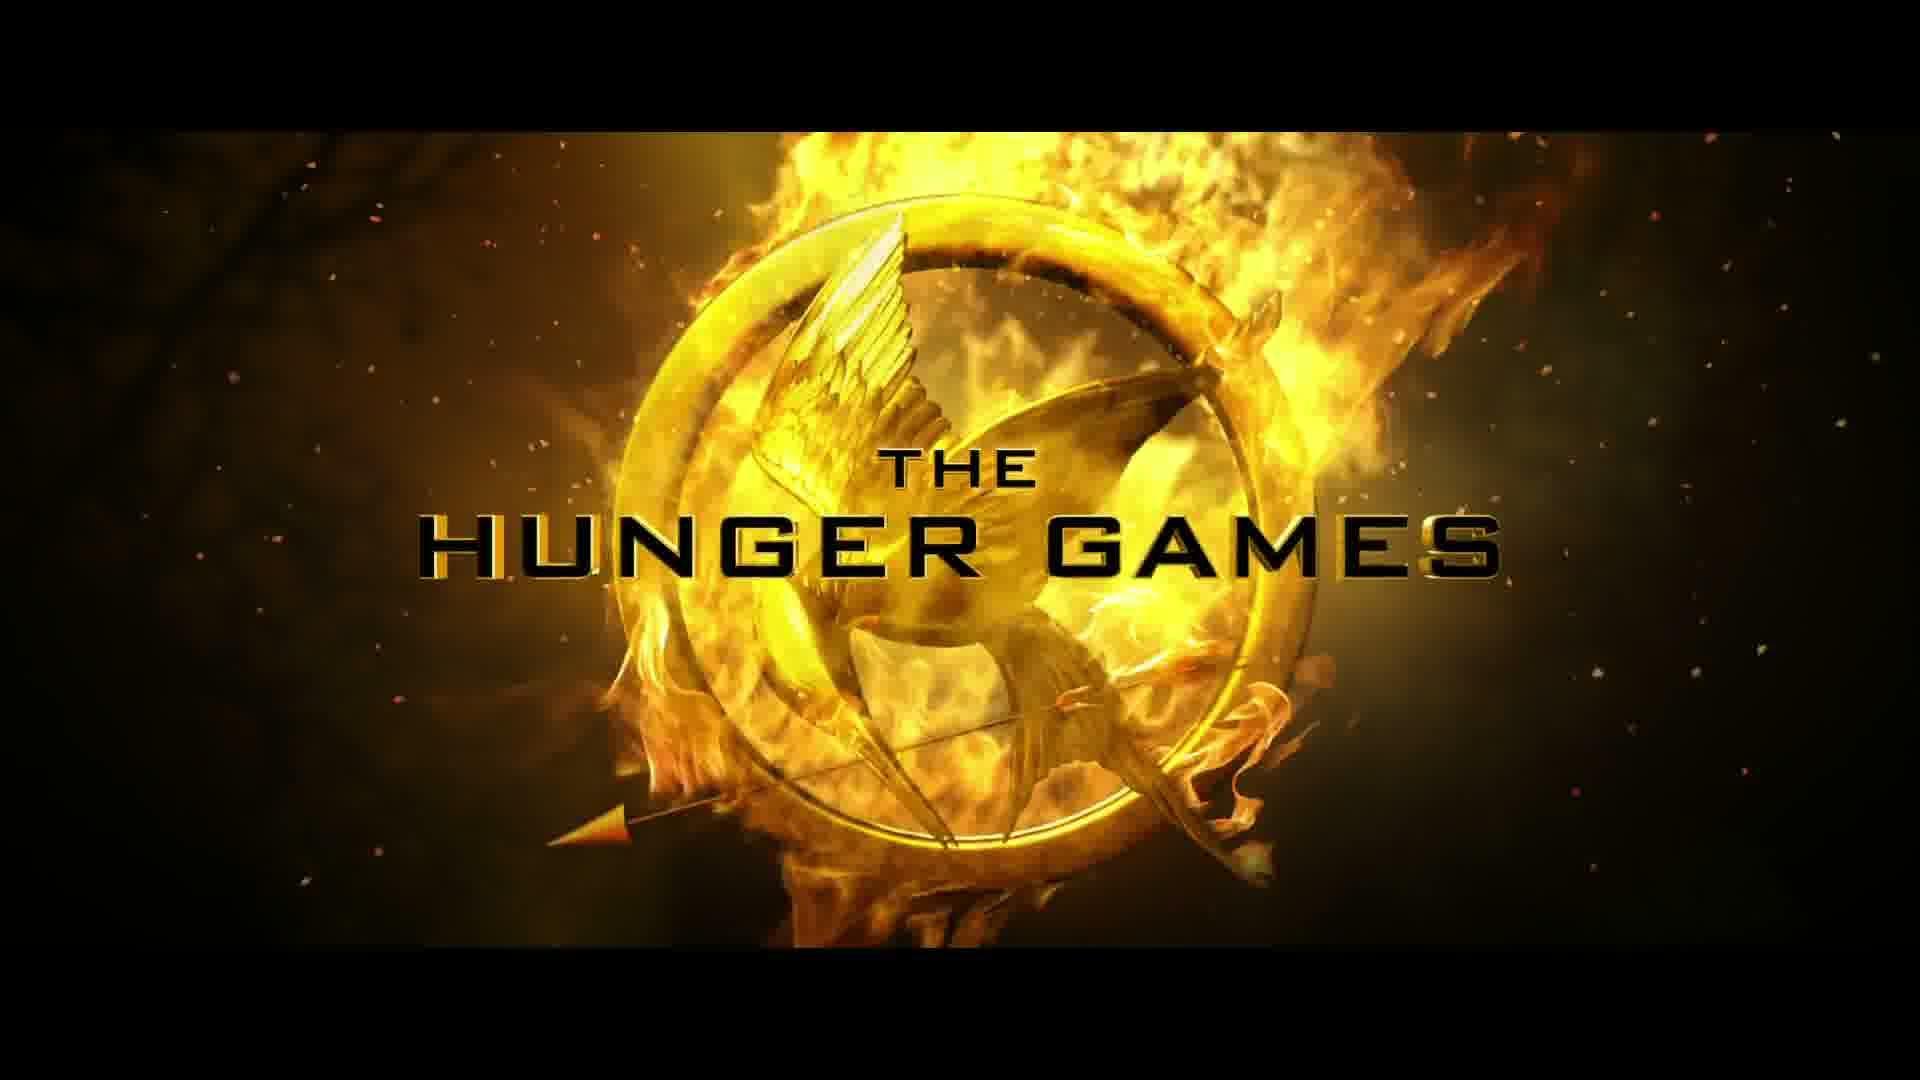 Primrose Everdeen Hunger Games trailer HD Wallpaper & Background